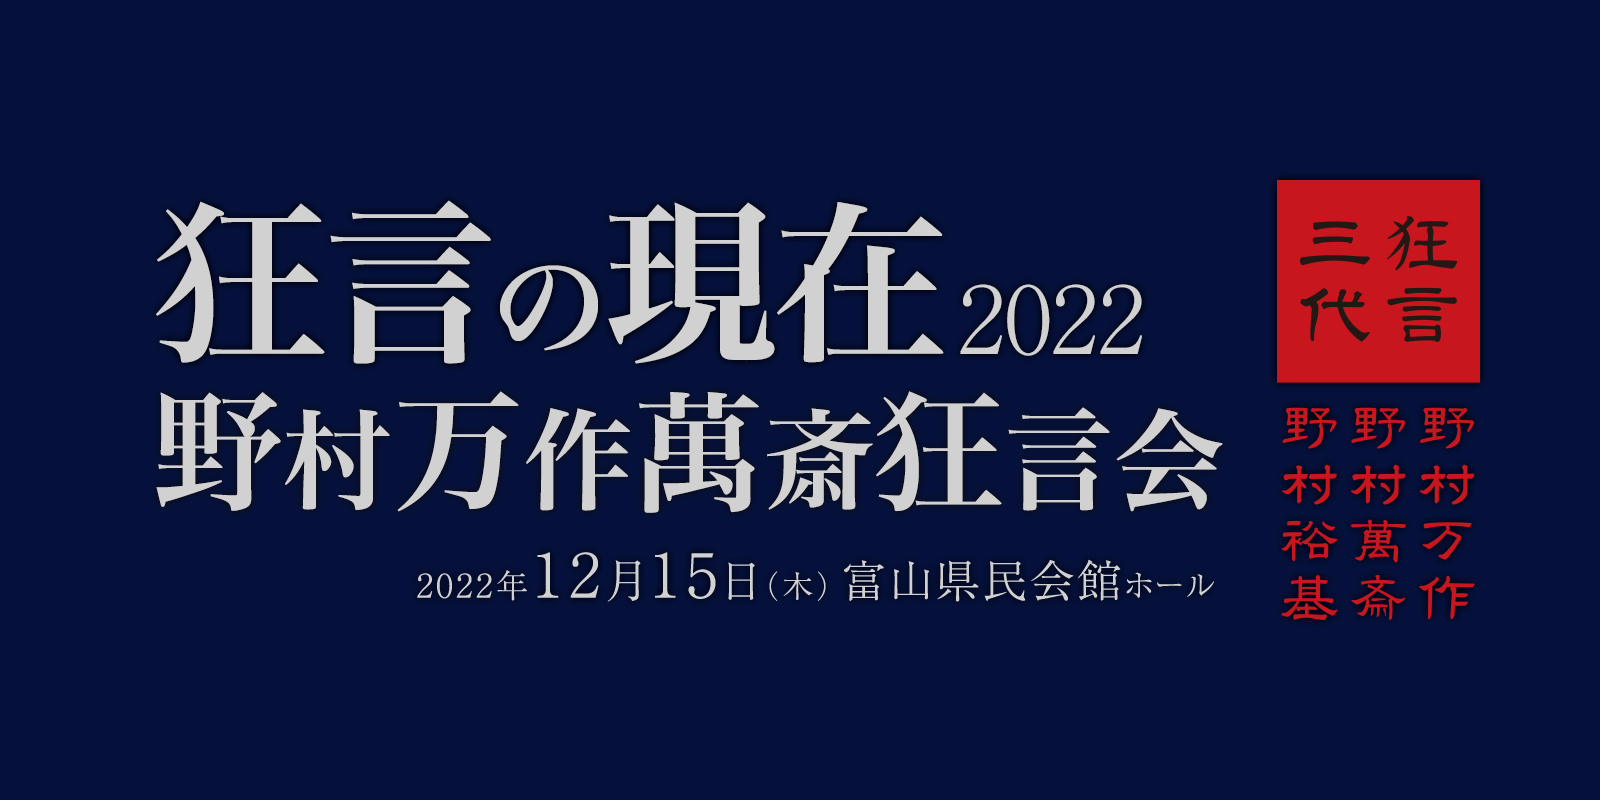 「狂言の現在2022 野村万作萬斎狂言会」富山公演